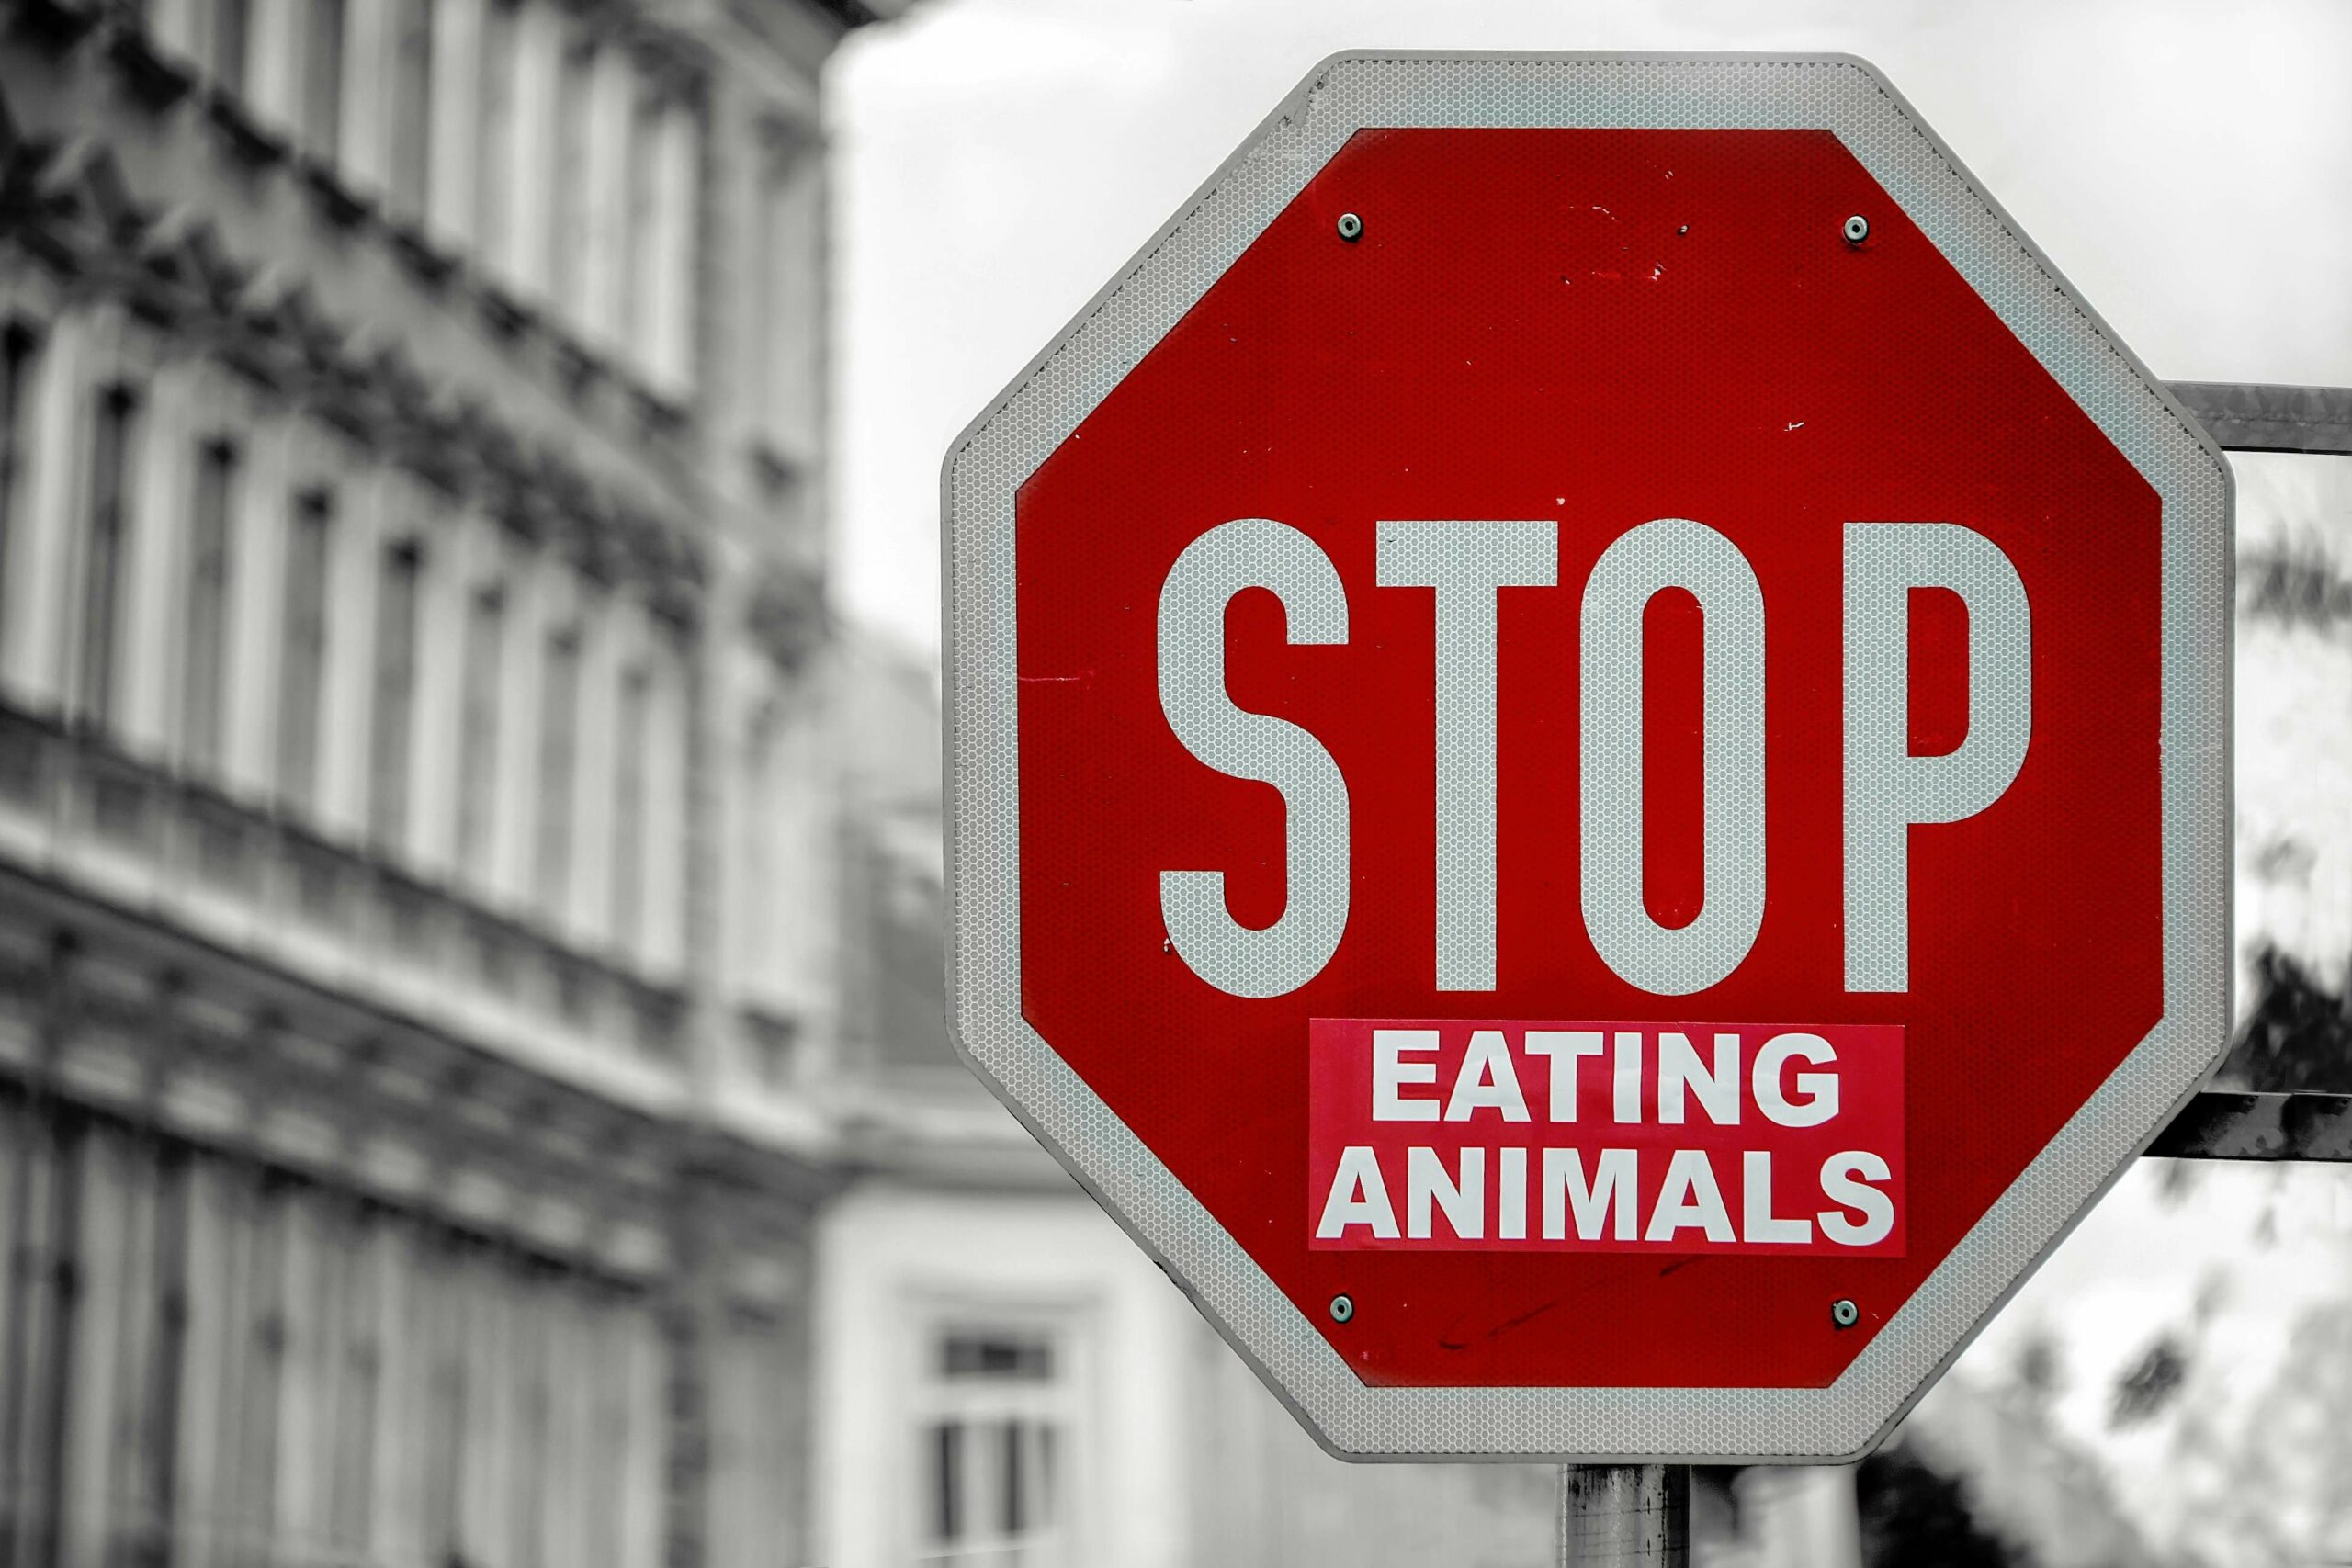 Bienfaits alimentation vegane - panneau stop eating animals